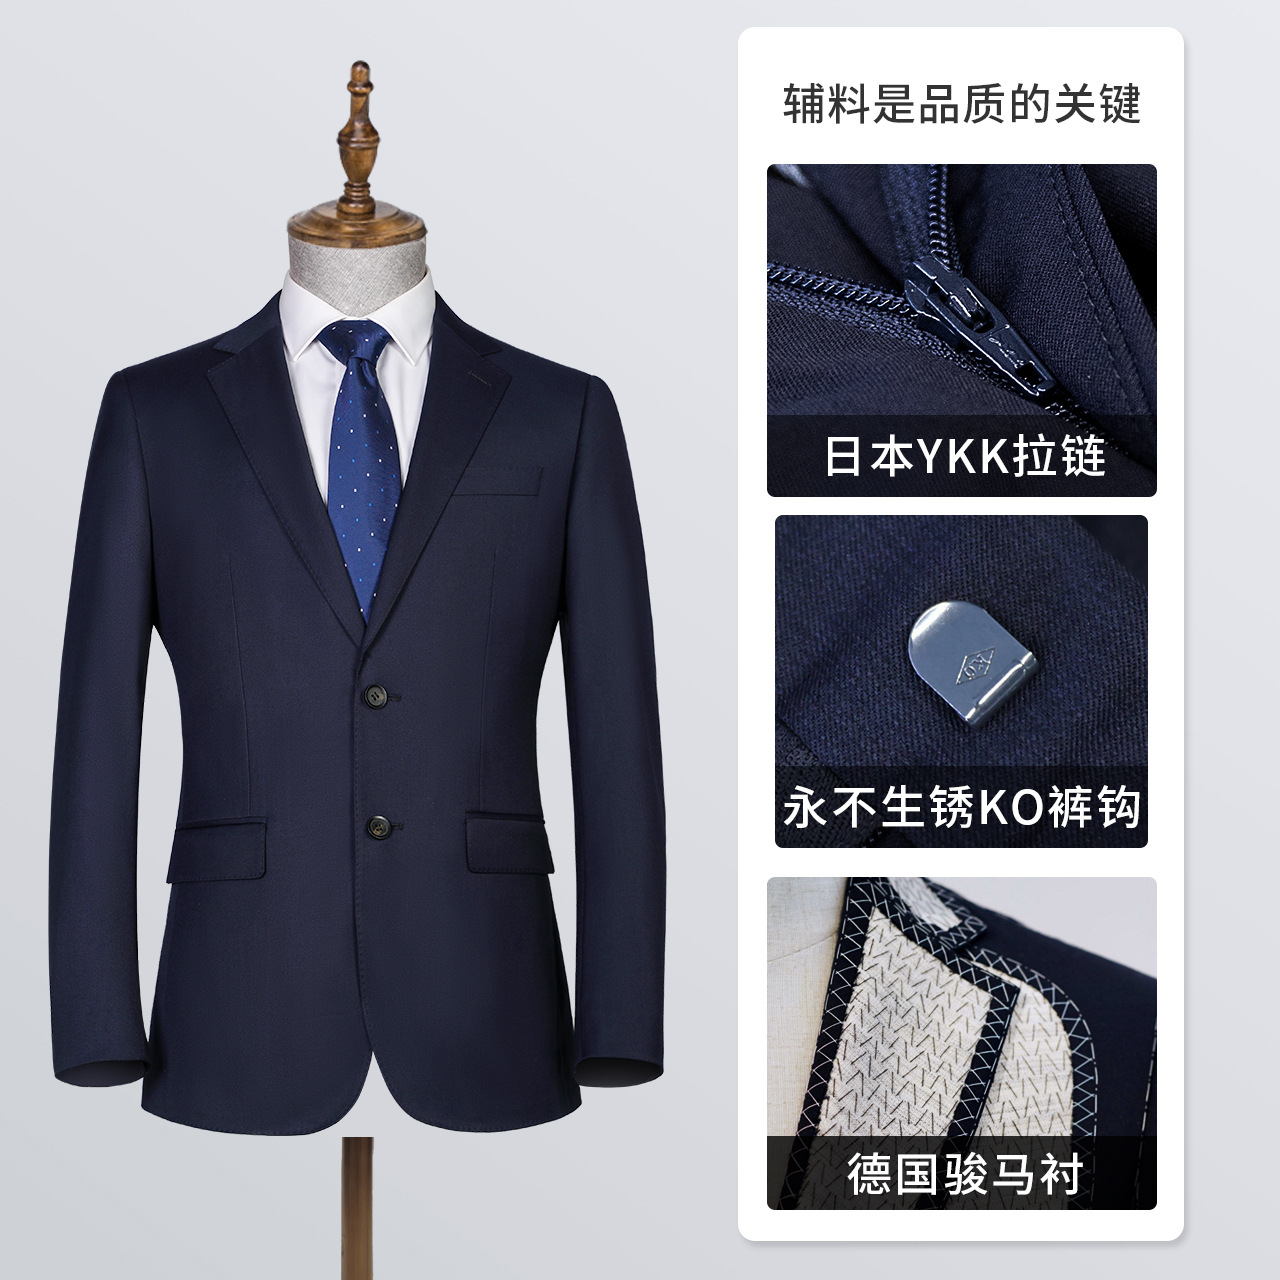 Black Technology Waterproof Oil-Proof Anti-Fouling Suit Men's Bridesmaid Suit Men's Suit Jacket Casual Business Business Wear